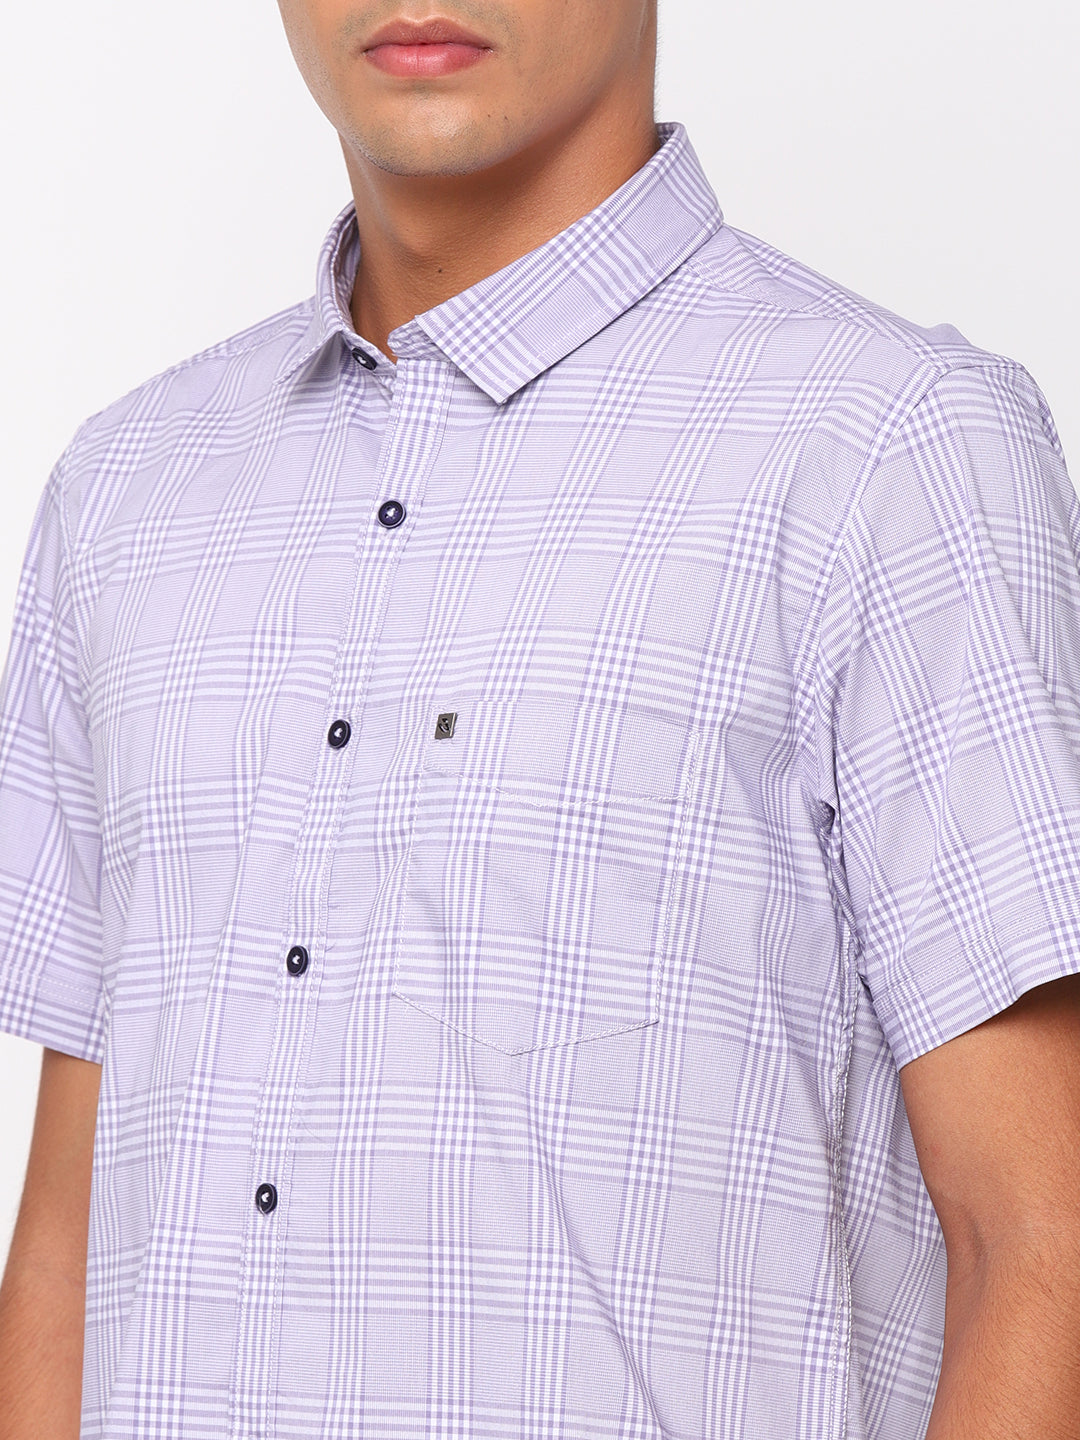 Purple Checkerd Shirt